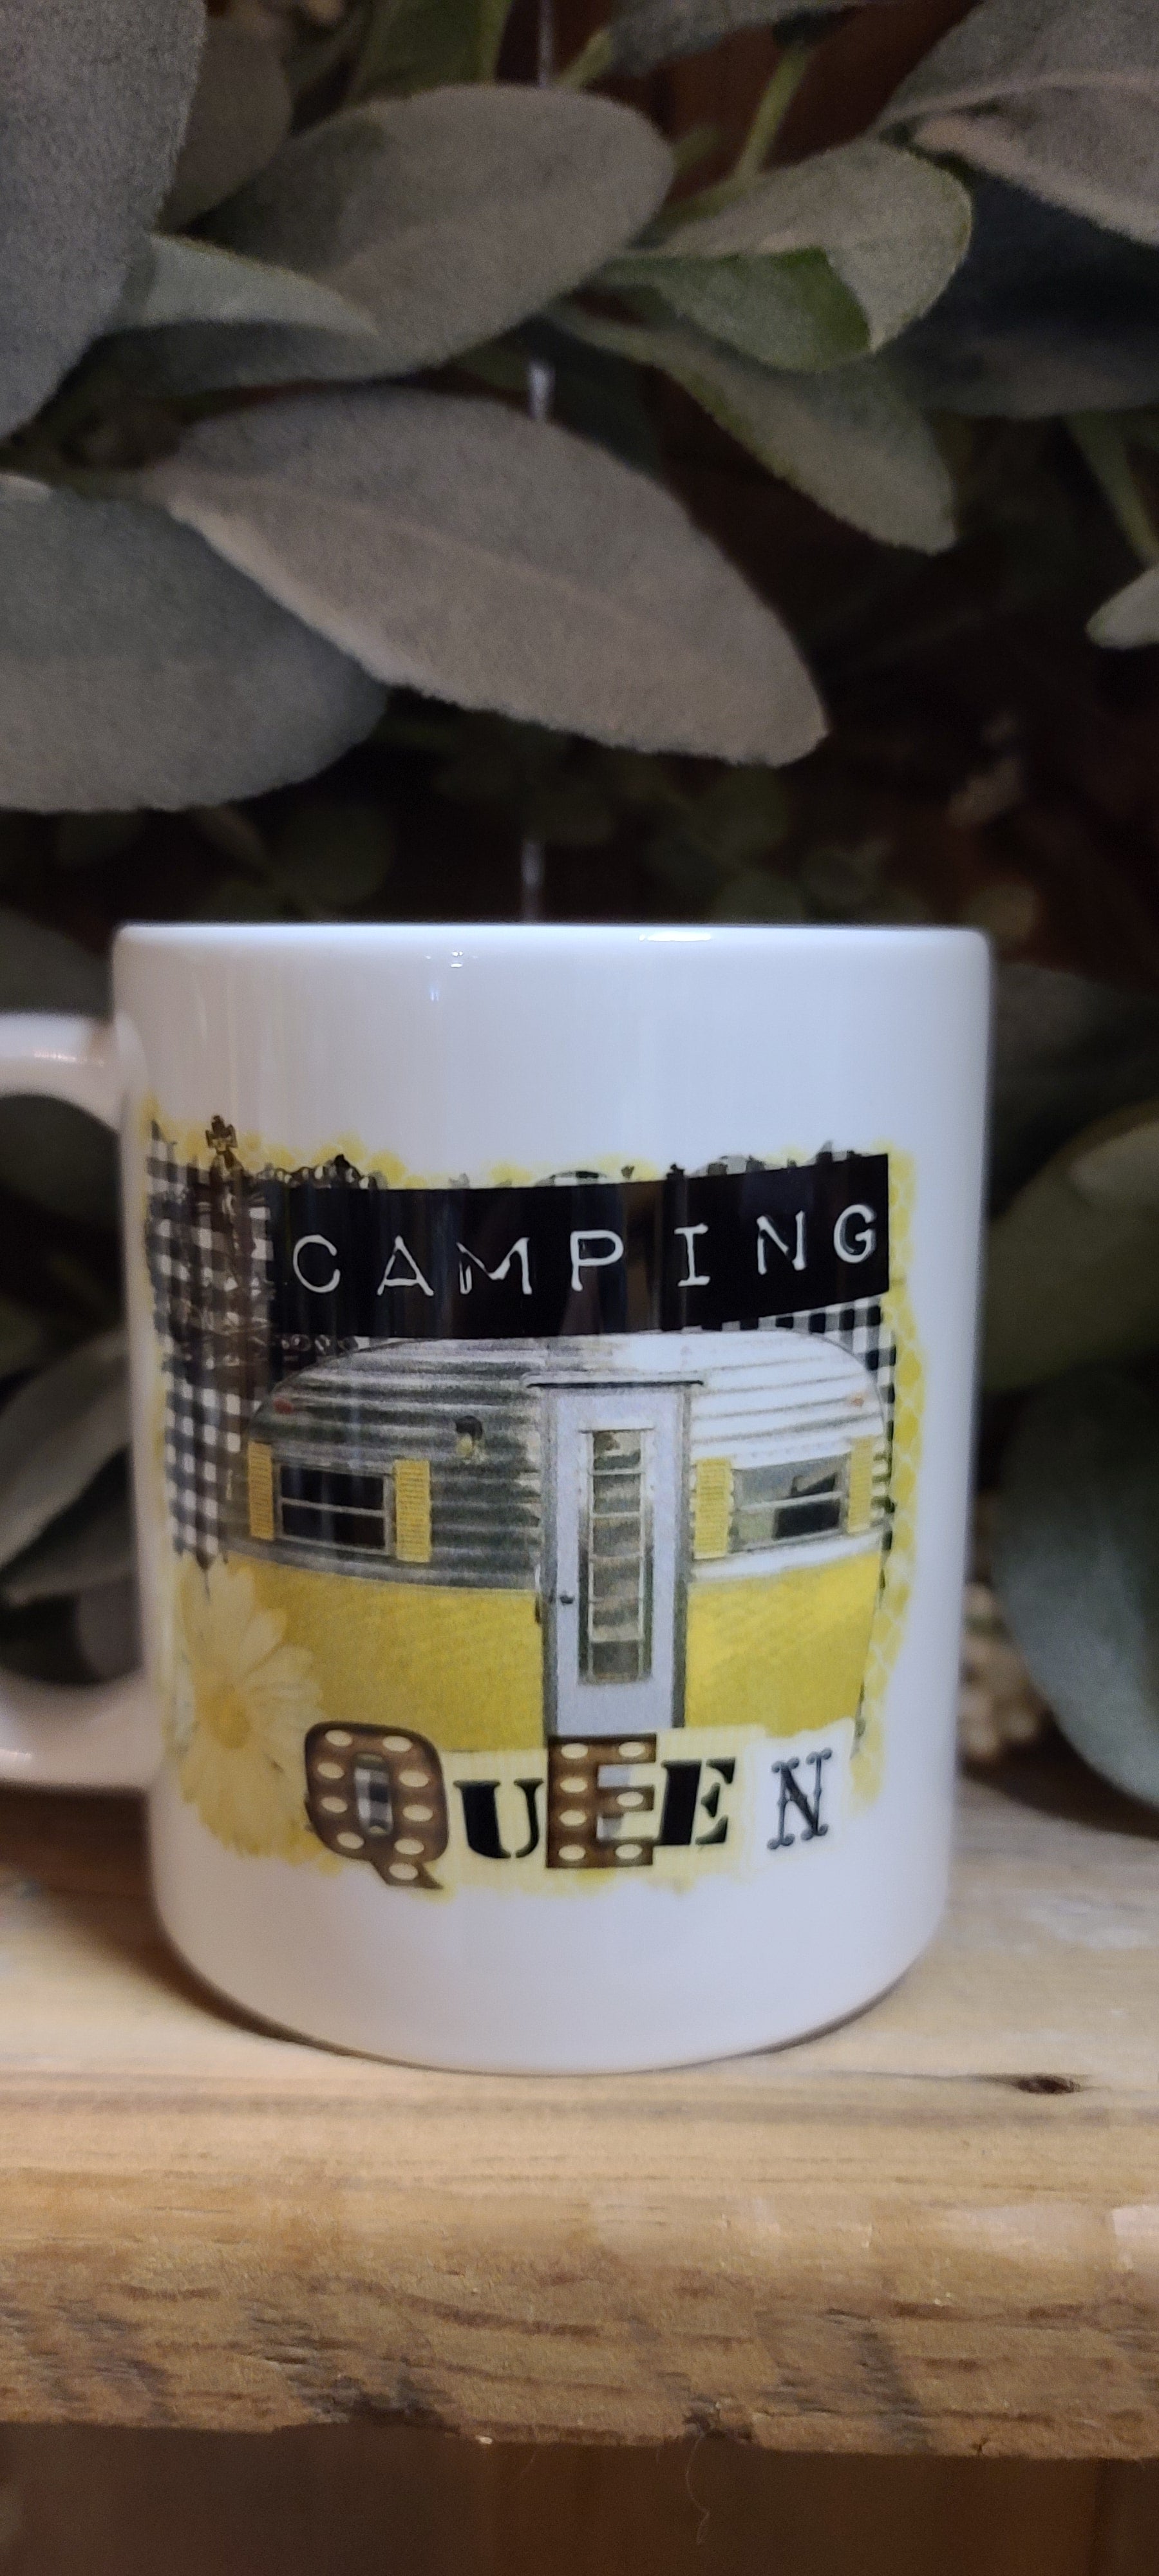 Camping queen